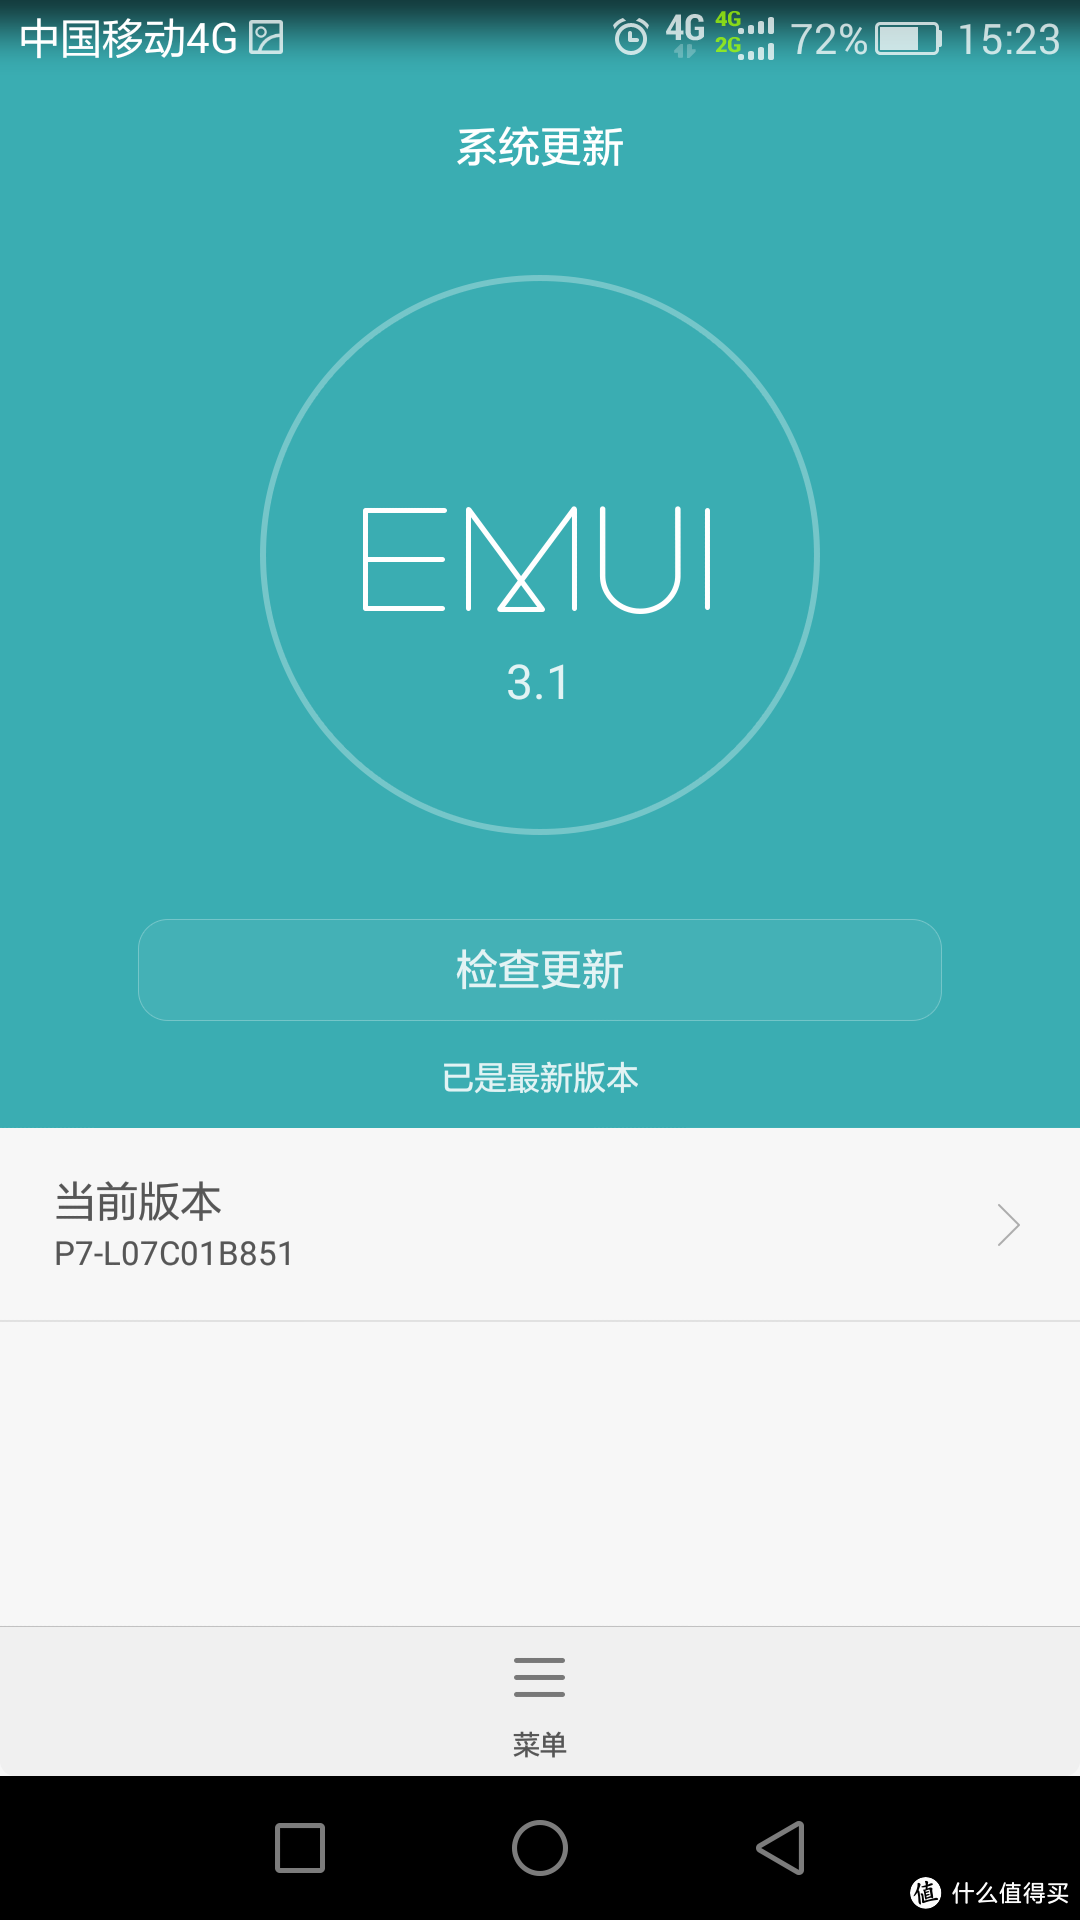 EMUI 3.1